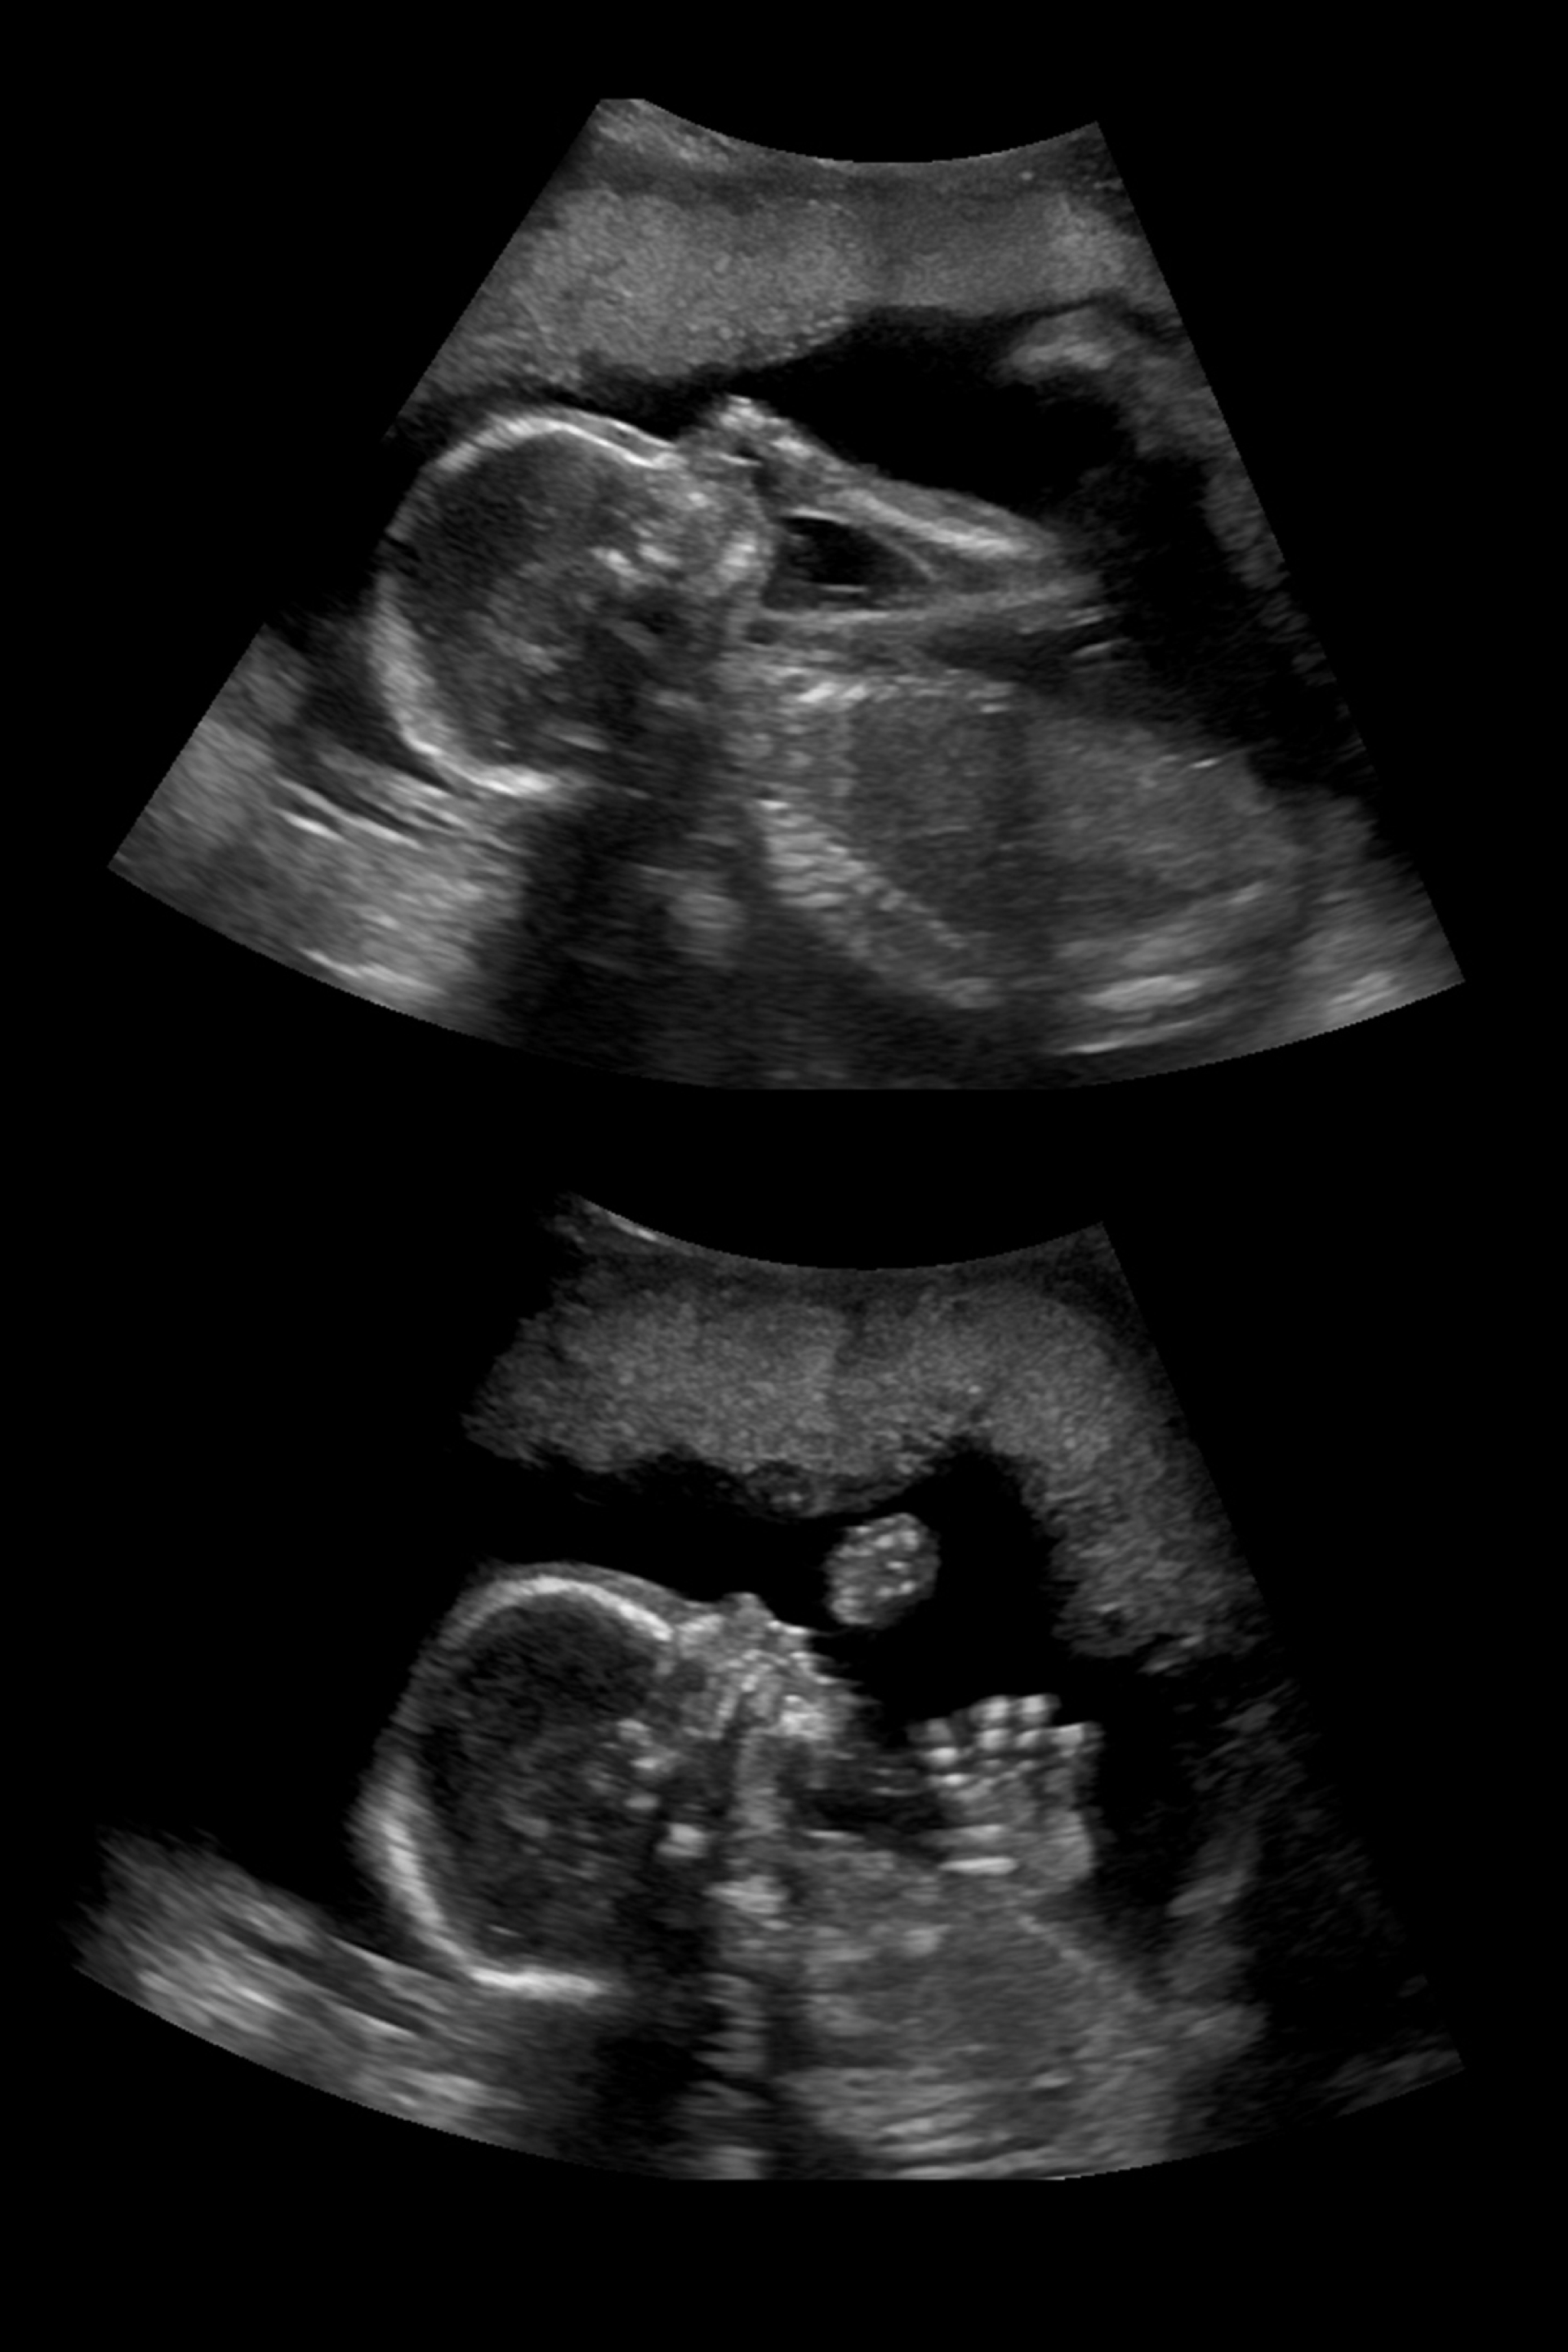 20 Weeks Pregnant, Gender Reveal